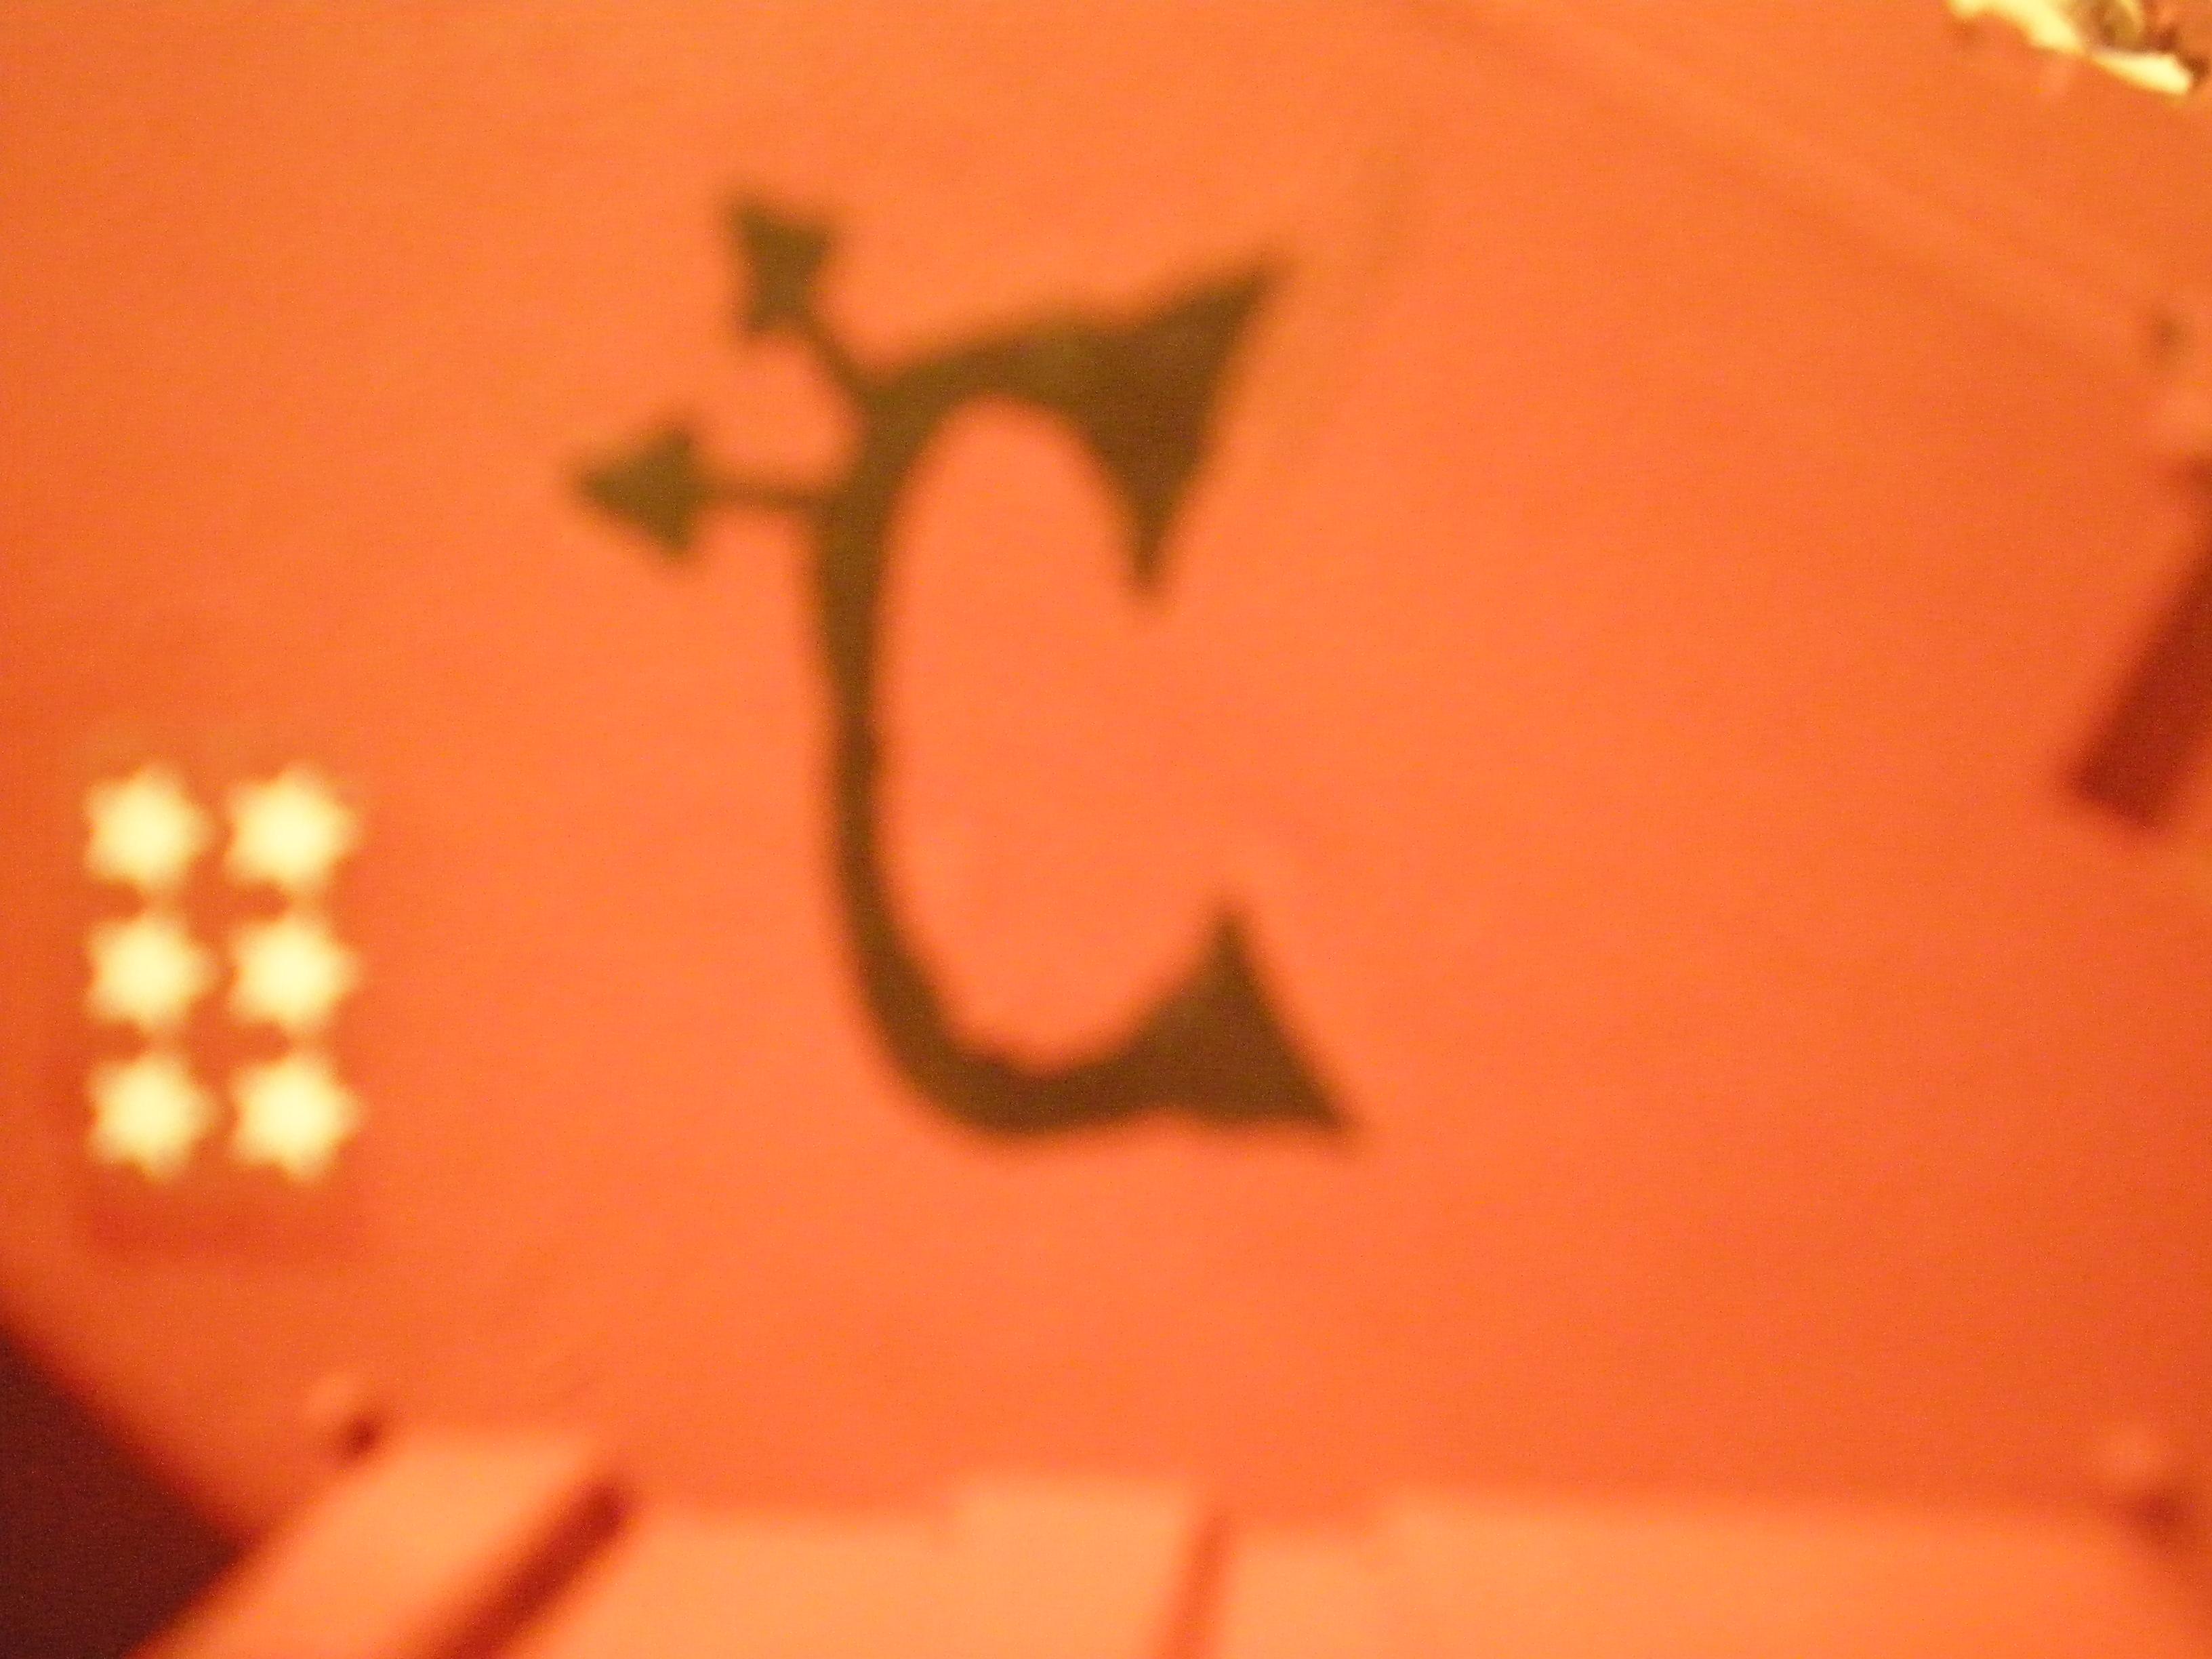 Crimson "C"